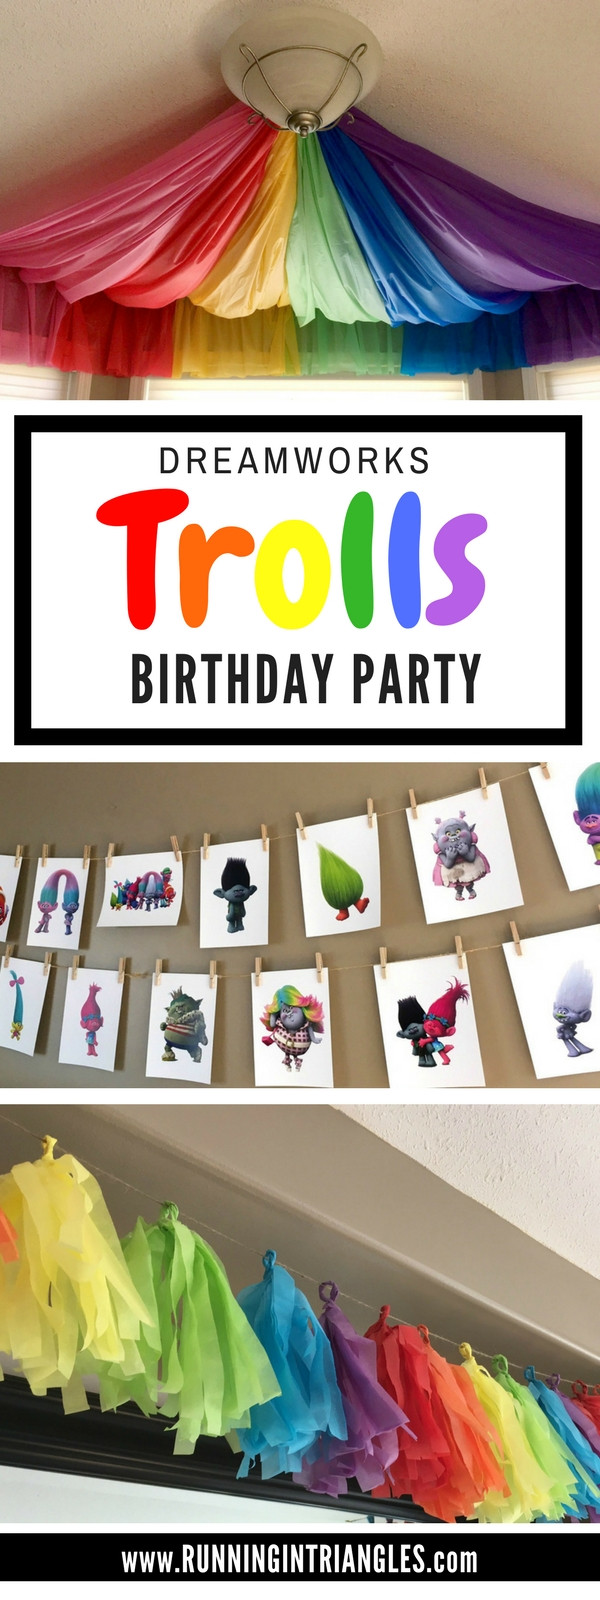 Dreamworks Trolls Birthday Party Ideas
 Dreamworks Trolls Birthday Party Running in Triangles